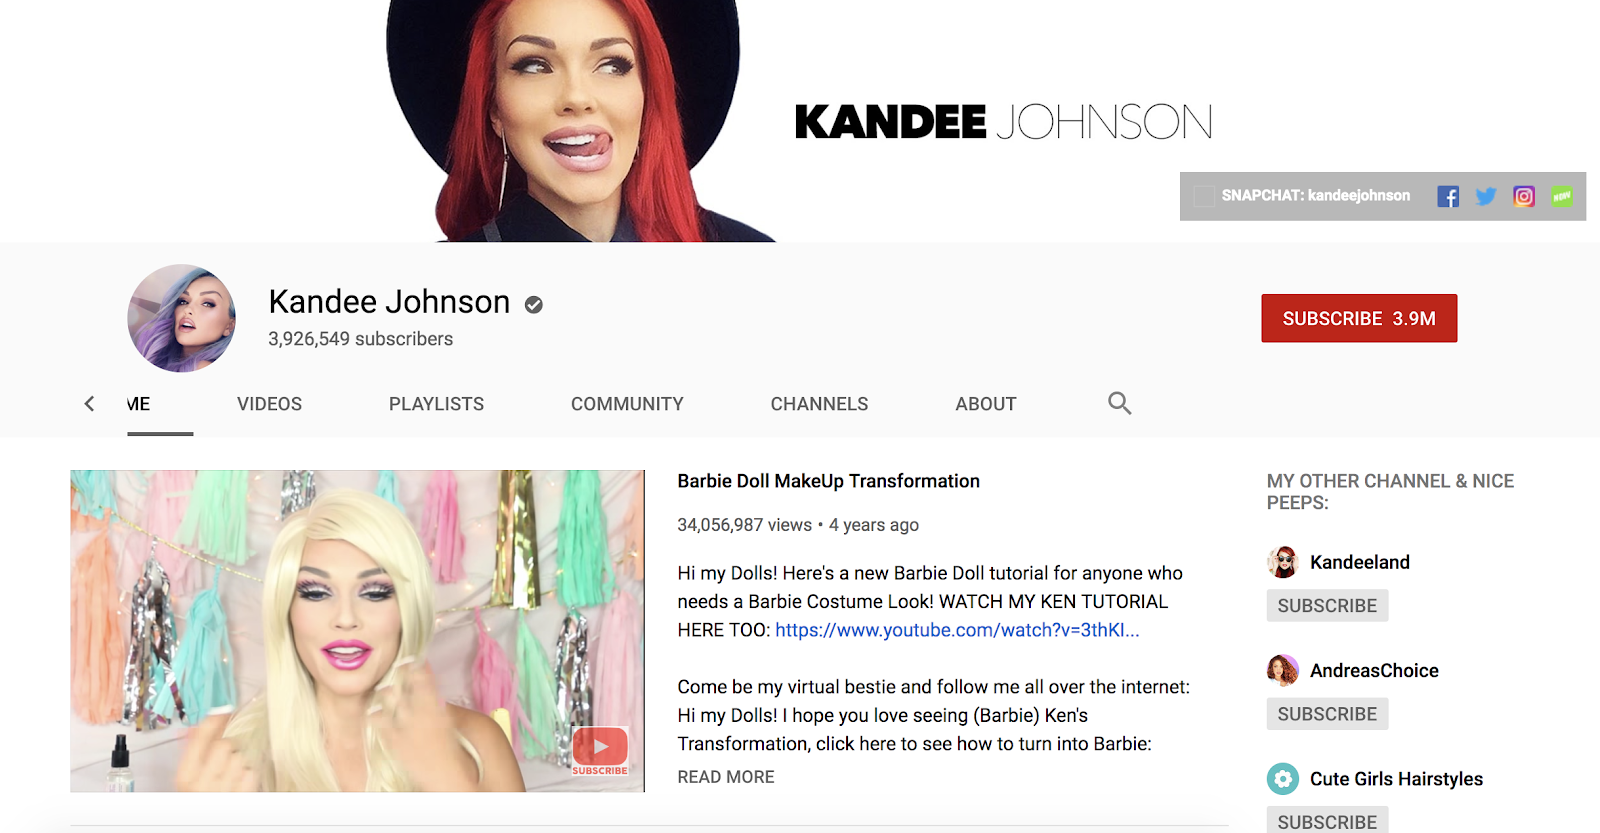 YouTube 关键意见领袖坎迪·约翰逊